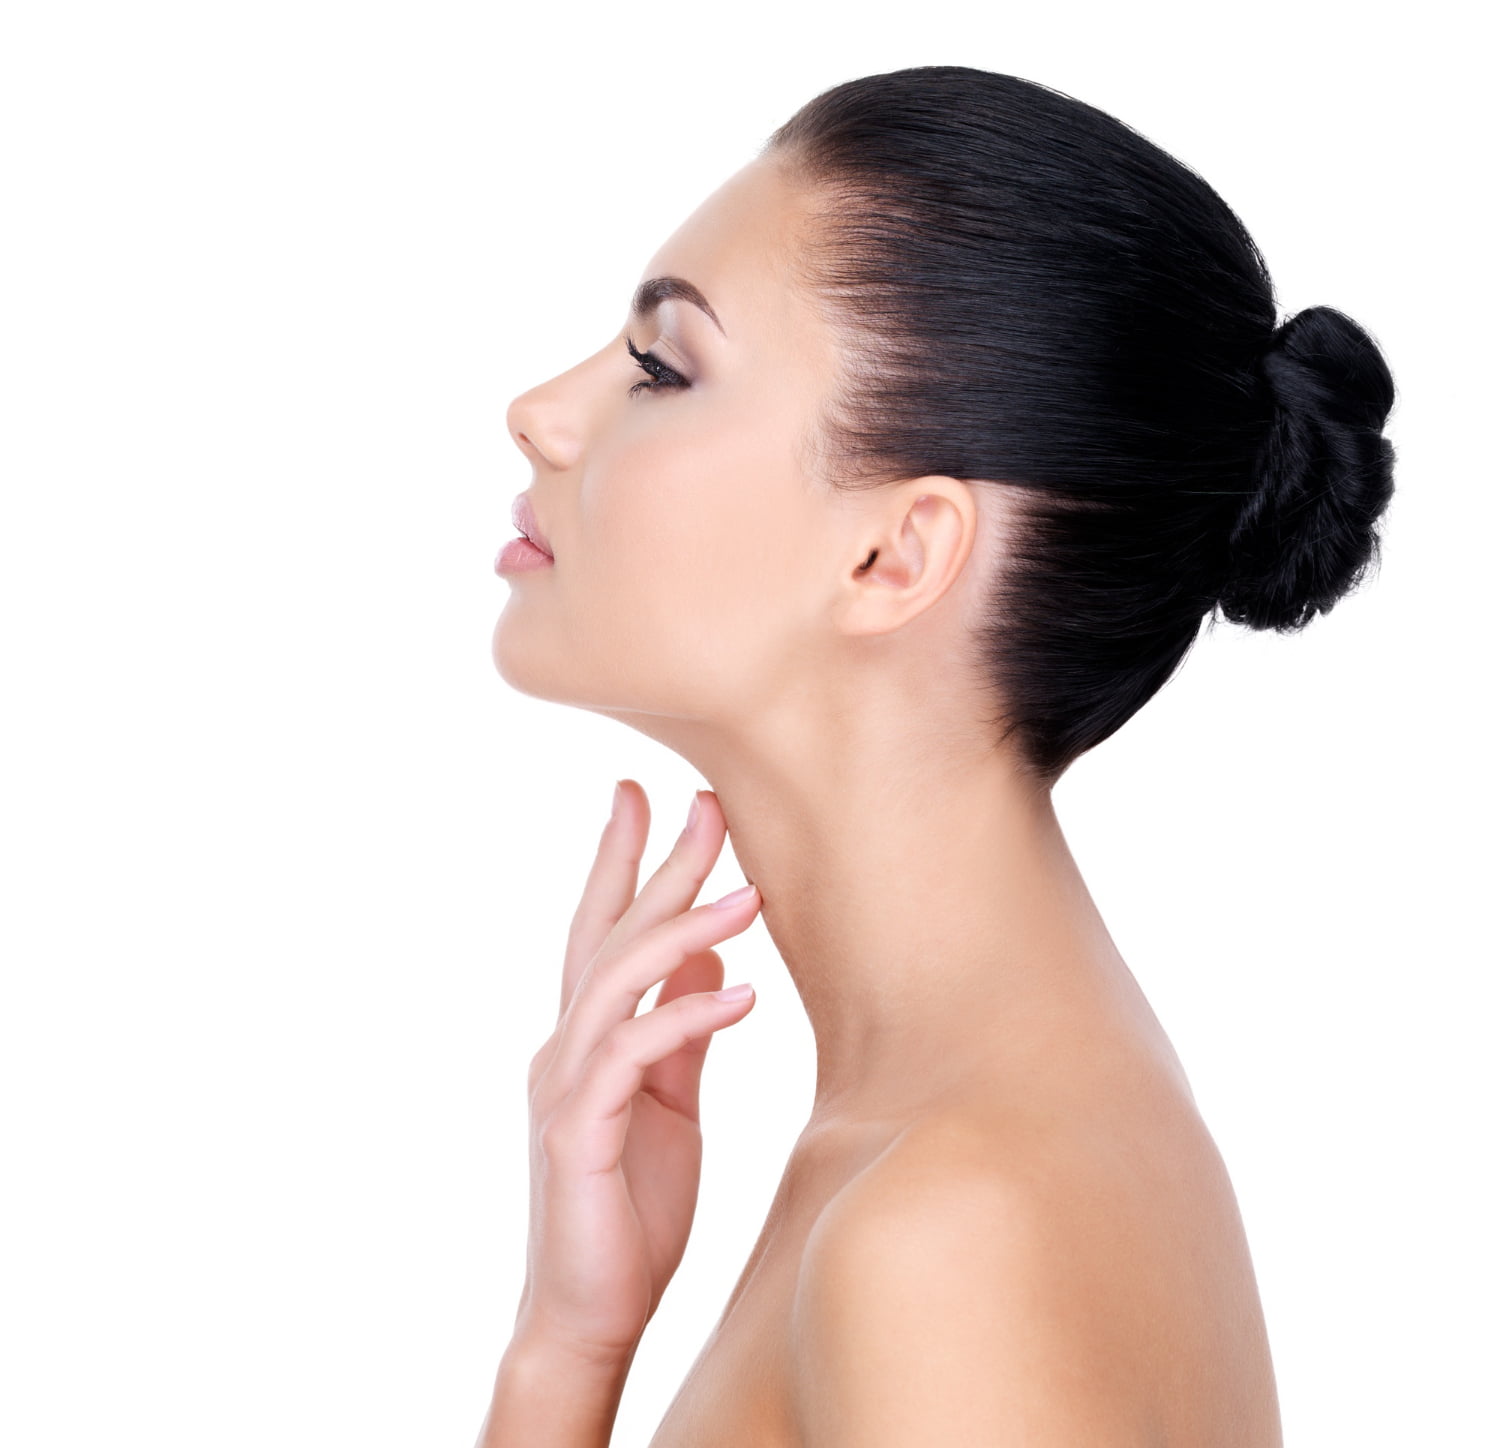 métodos naturales para rejuvenecer rostro y cuello